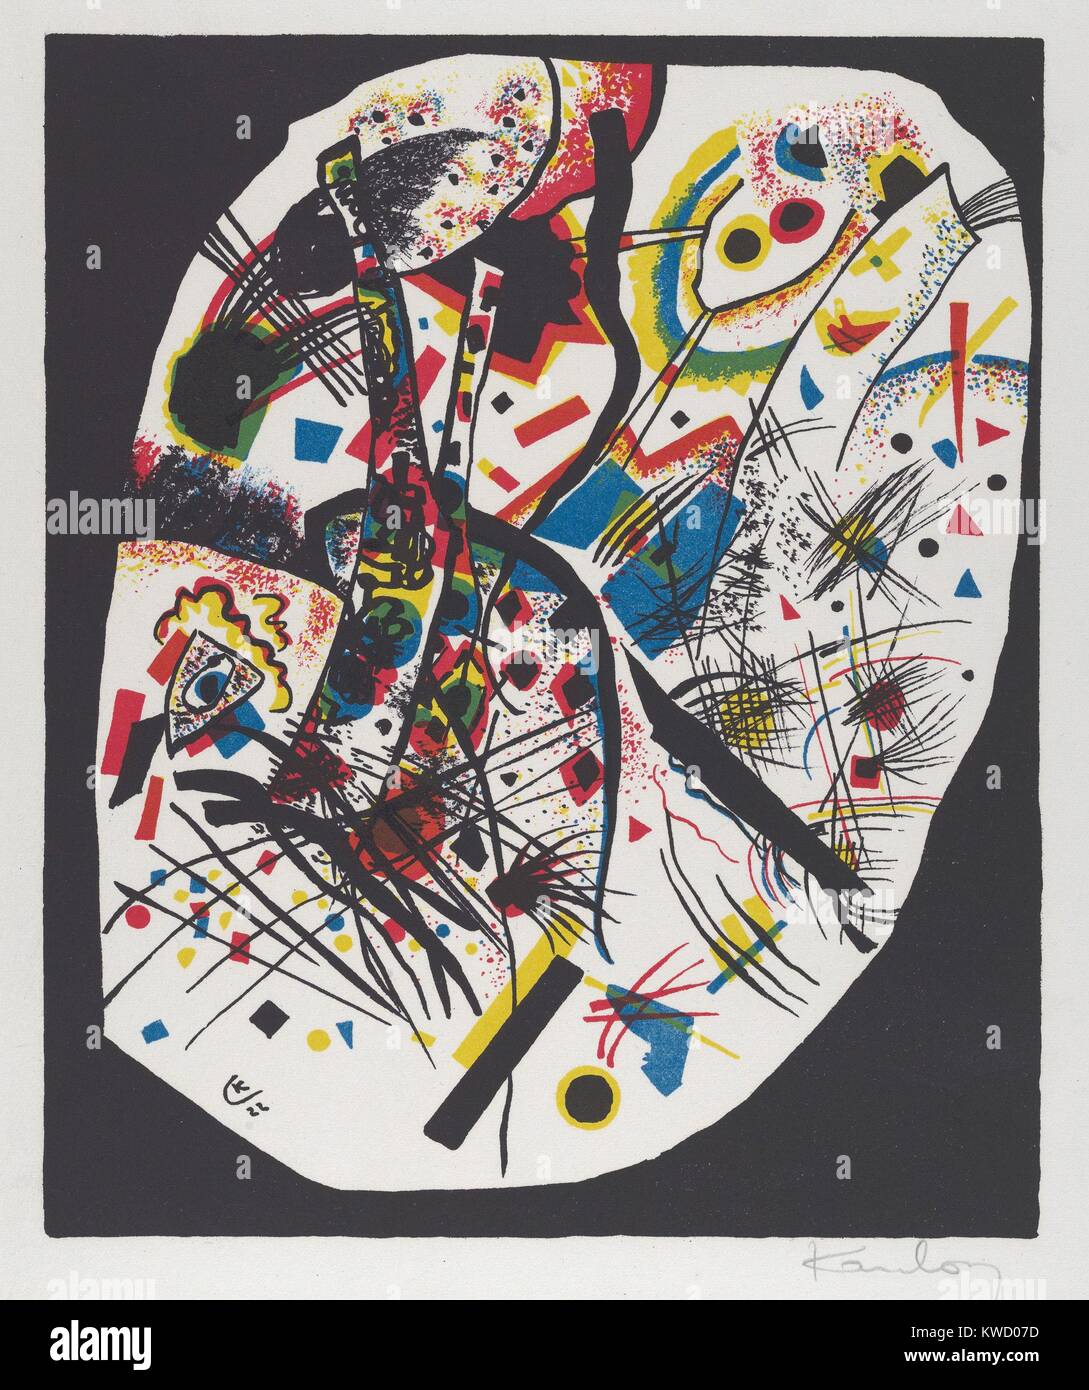 Kleine Welten III (petits mondes III), par Vasily Kandinsky, 1922, expressionniste allemand russe imprimer. Petites et grandes zones de couleur à la forme originale, les formes géométriques, et les lignes sont les éléments de cette lithographie BSLOC Résumé (2017 5 146) Banque D'Images